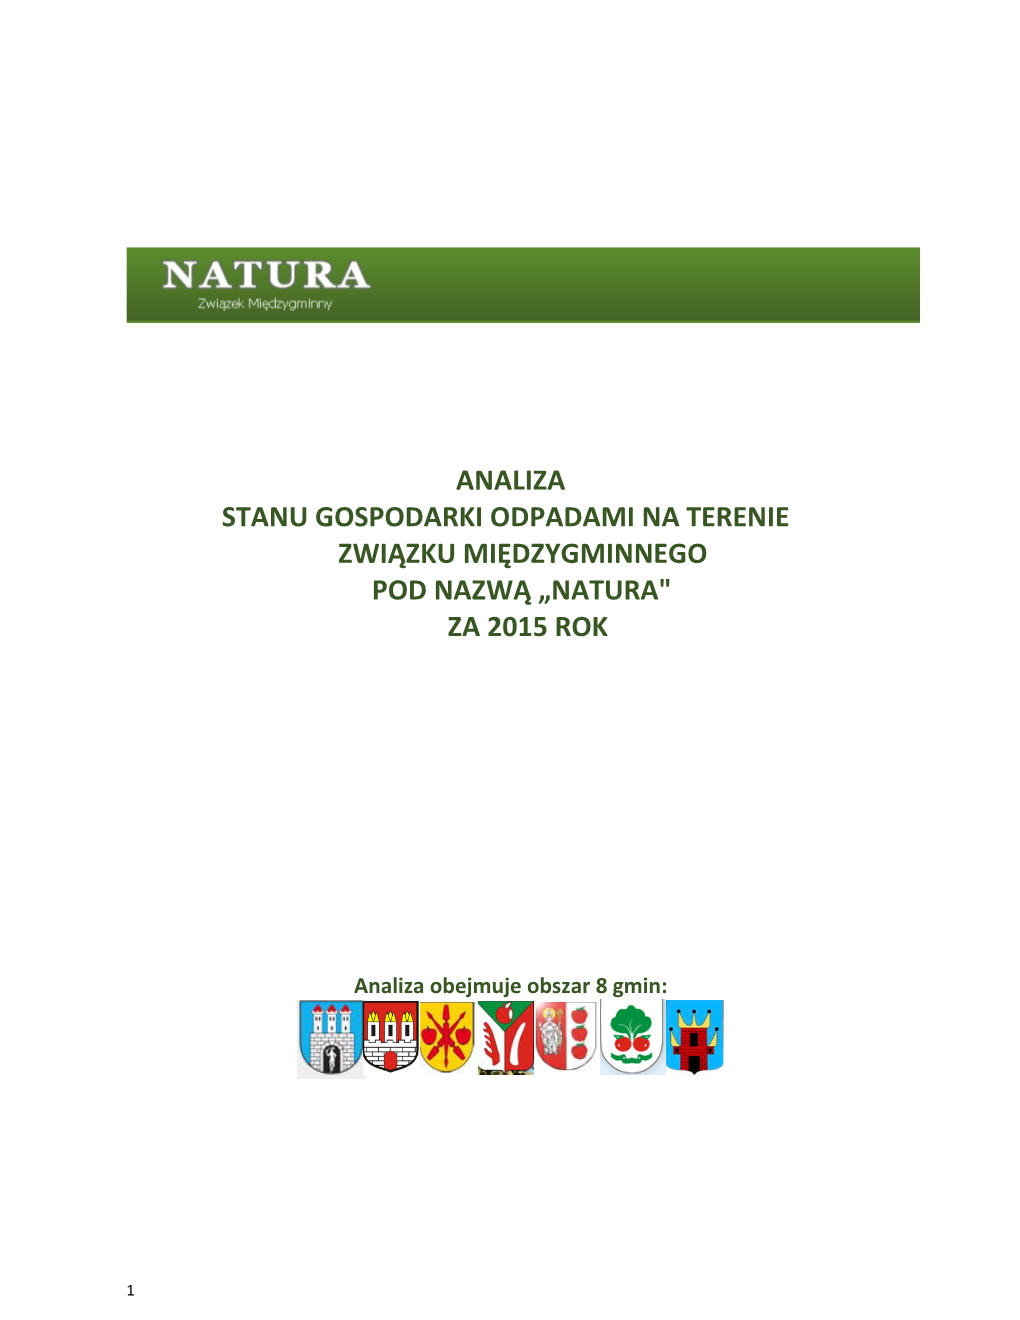 Analiza Stanu Gospodarki Odpadami Na Terenie Związku Międzygminnego Pod Nazwą „Natura" Za 2015 Rok